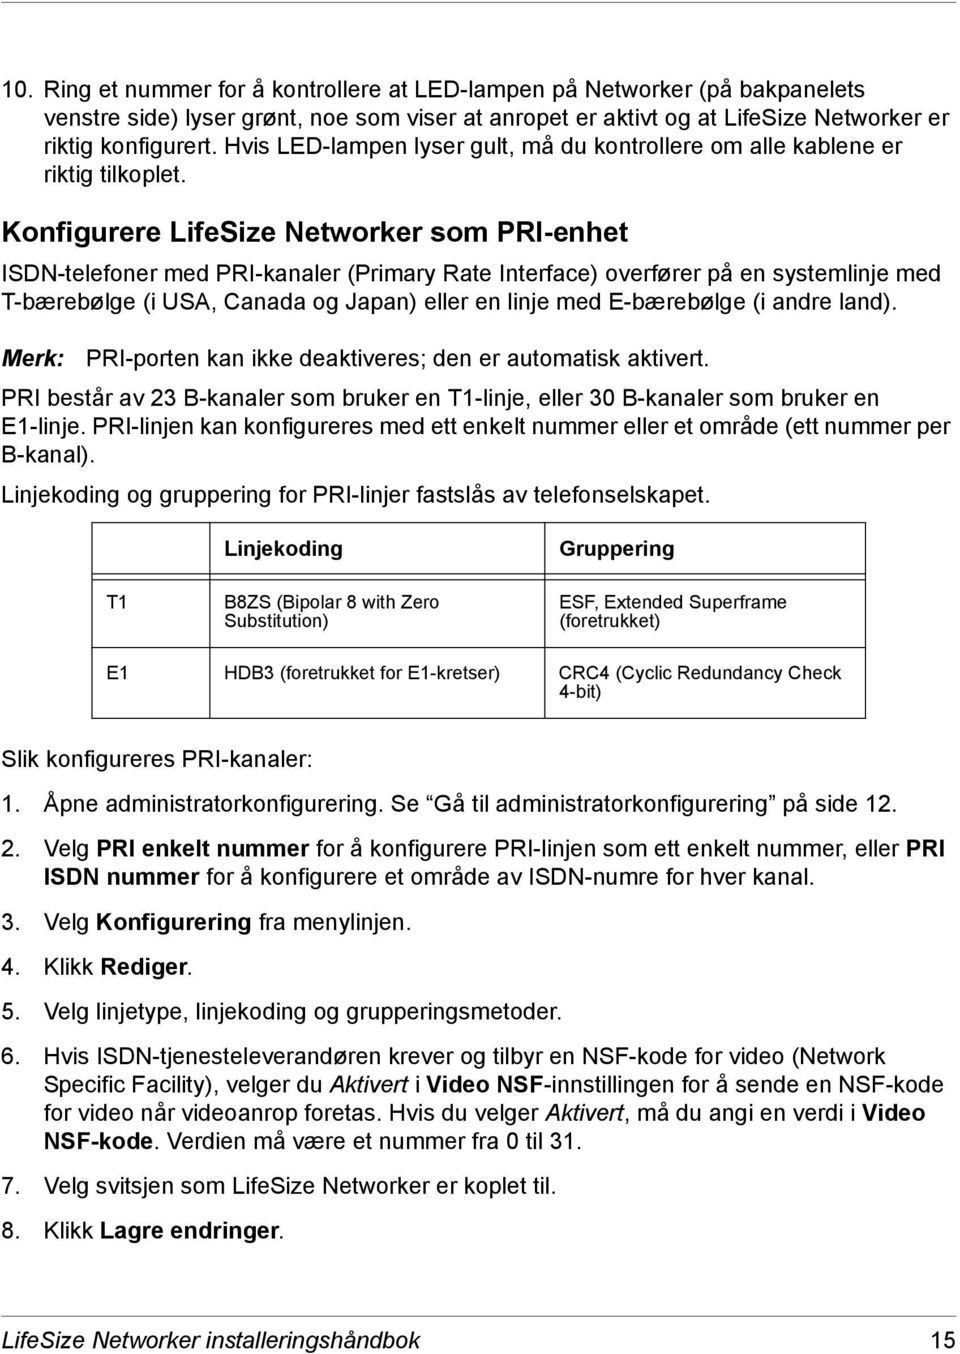 Konfigurere LifeSize Networker som PRI-enhet ISDN-telefoner med PRI-kanaler (Primary Rate Interface) overfører på en systemlinje med T-bærebølge (i USA, Canada og Japan) eller en linje med